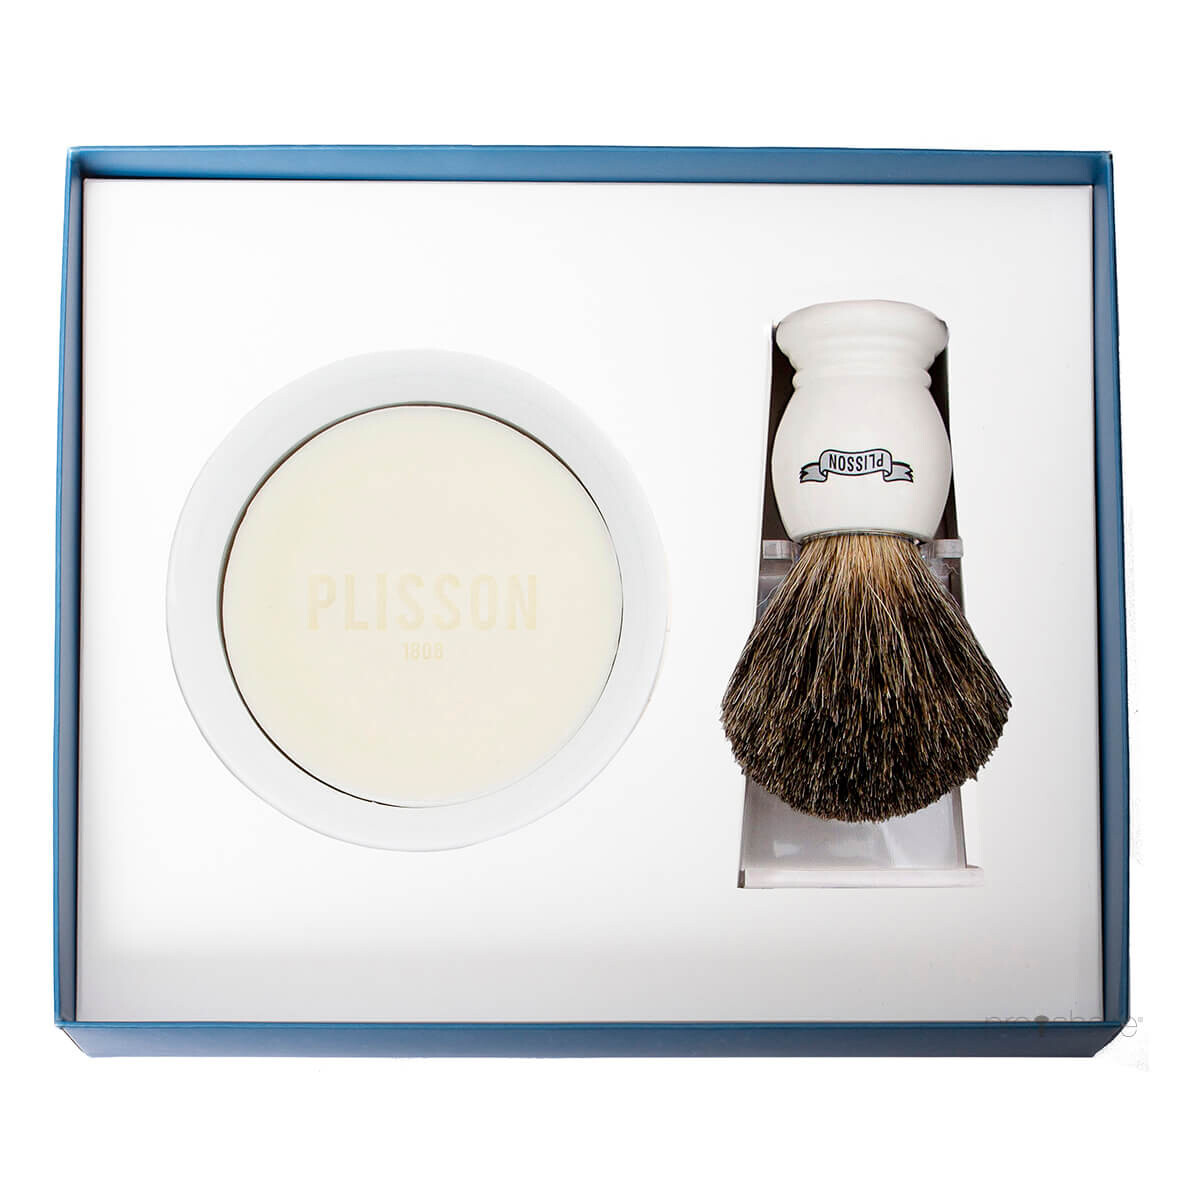 Plisson Startsæt med Russian Grey Badger Barberkost, Holder og Porcelænsskål med Barbersæbe, Hvid